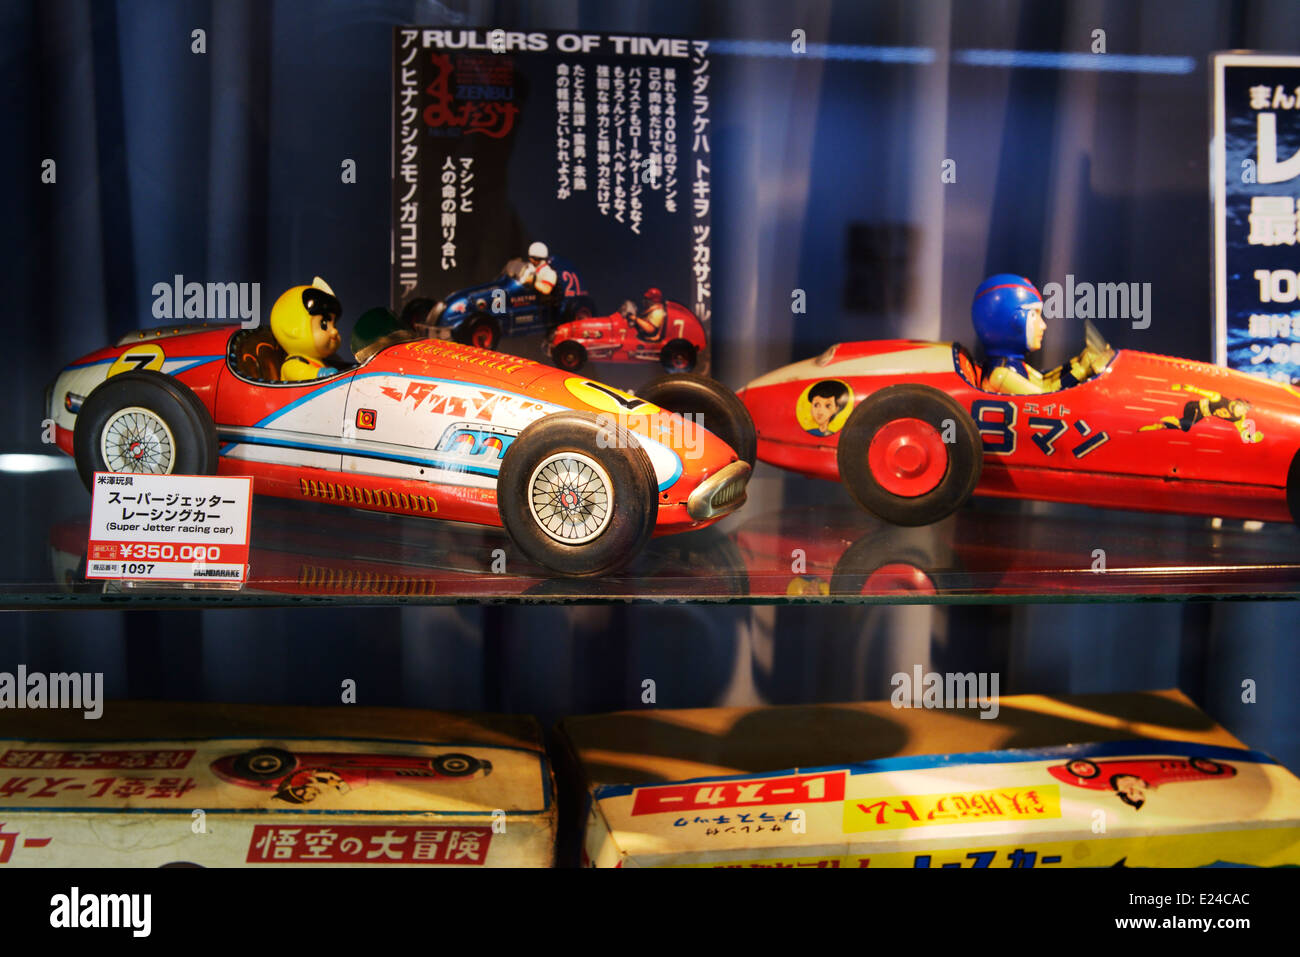 Super Jetter, antique vintage de collection voitures de course de jouets dans un magasin à Tokyo, Japon Banque D'Images